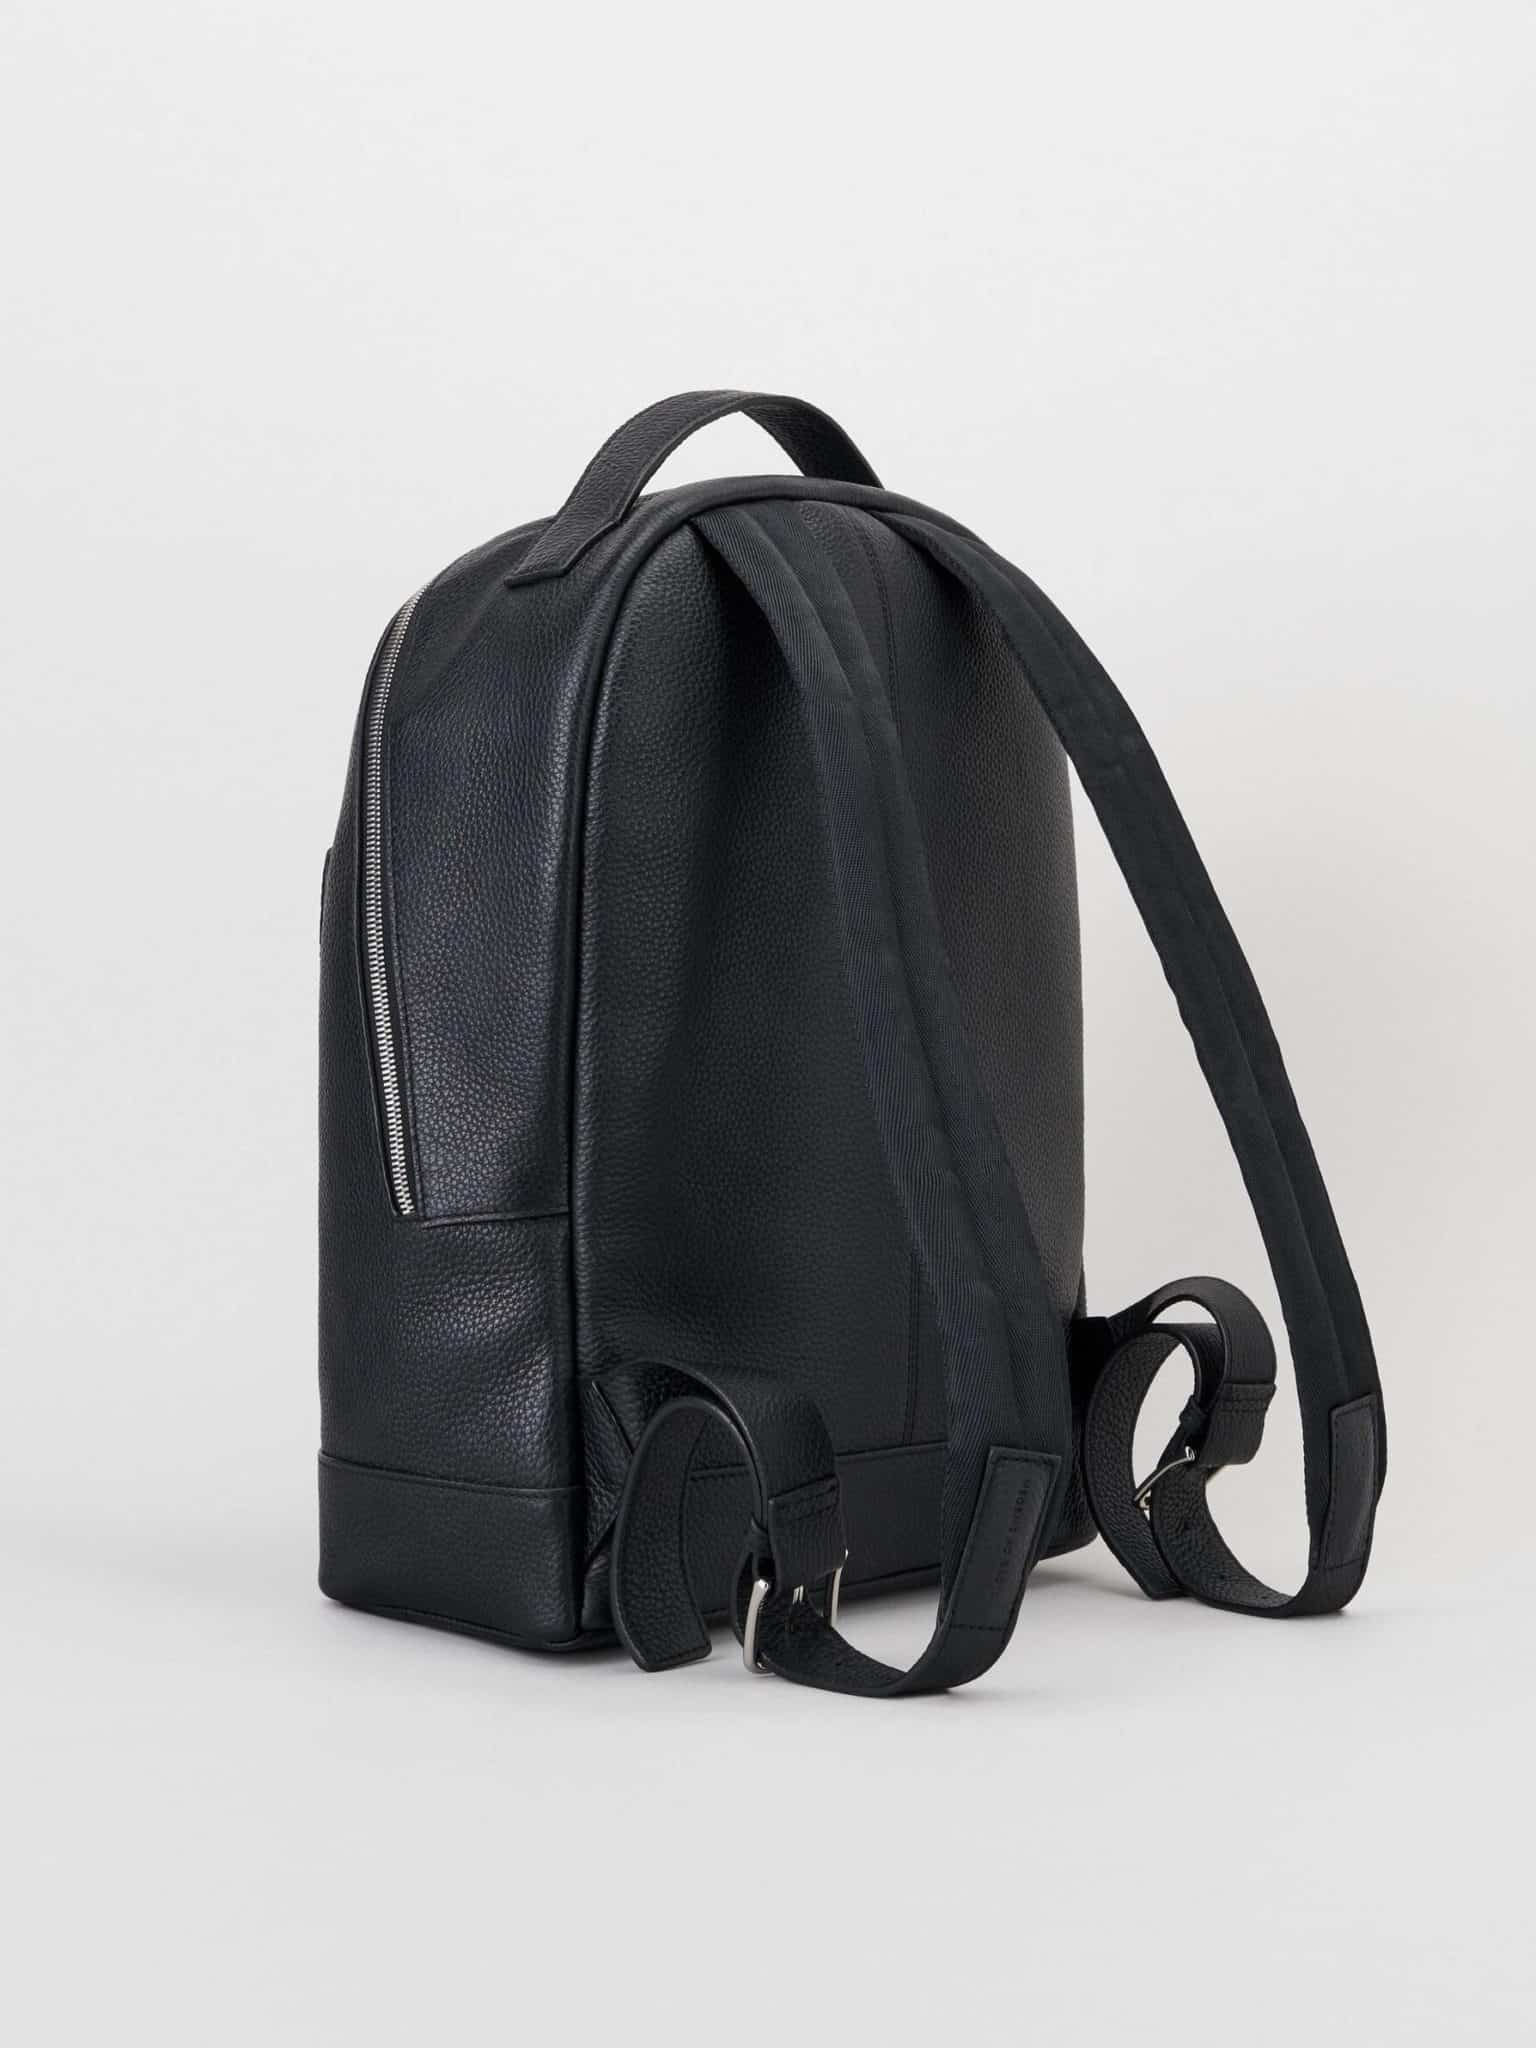 Buy Tiger of Sweden Berrent Backpack Black - Scandinavian Fashion Store